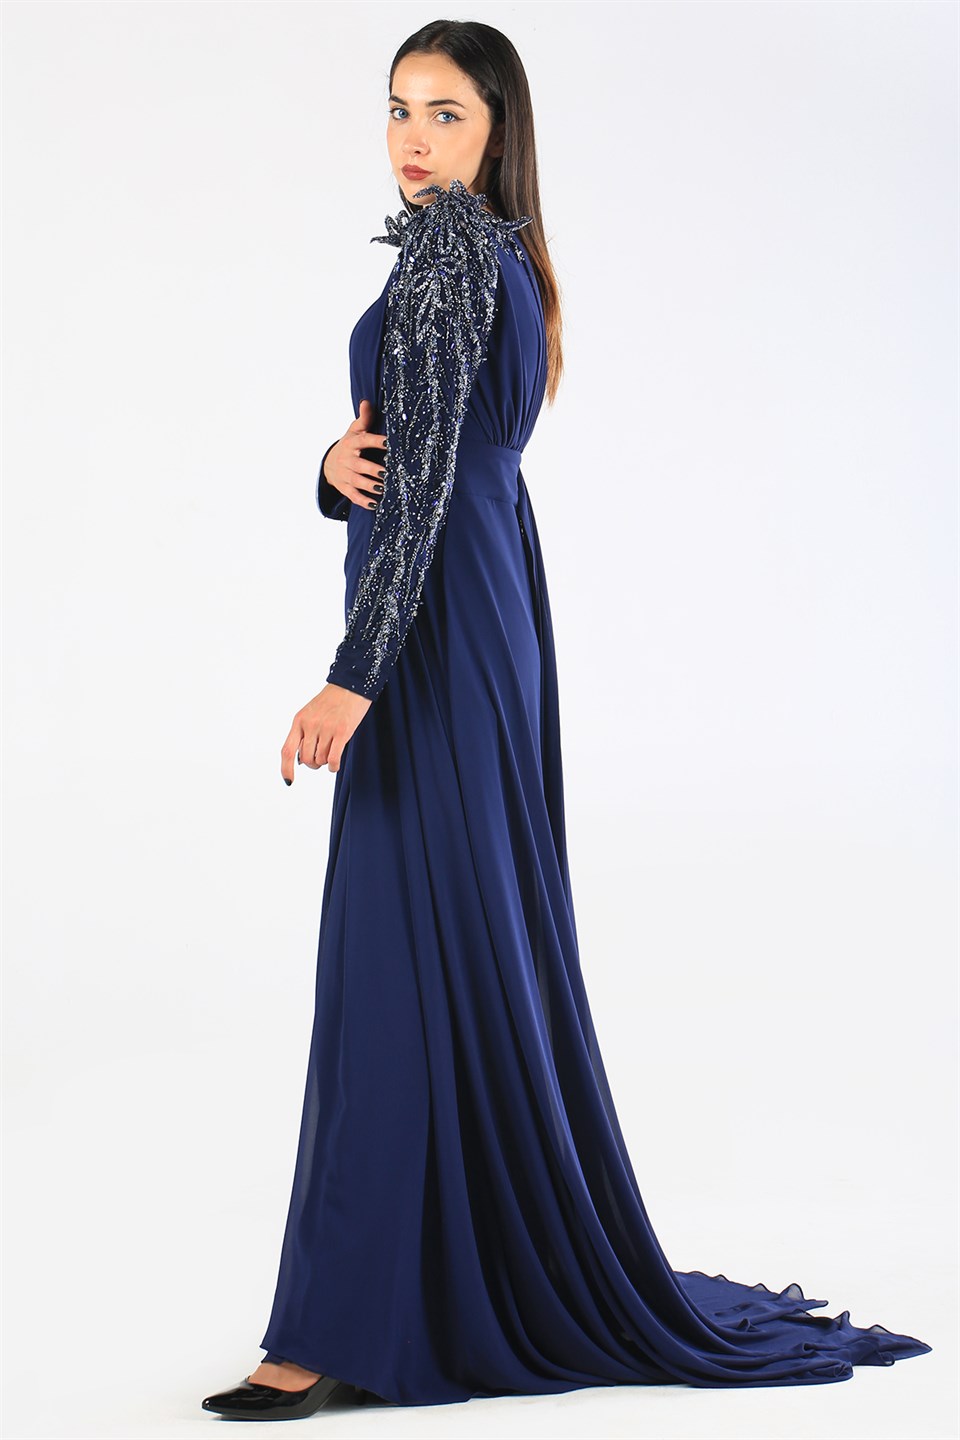 Kenzel Omuz ve Kol İşlemeli Lacivert Abiye Elbise (KENZEL-1100) | Wom  Boutique